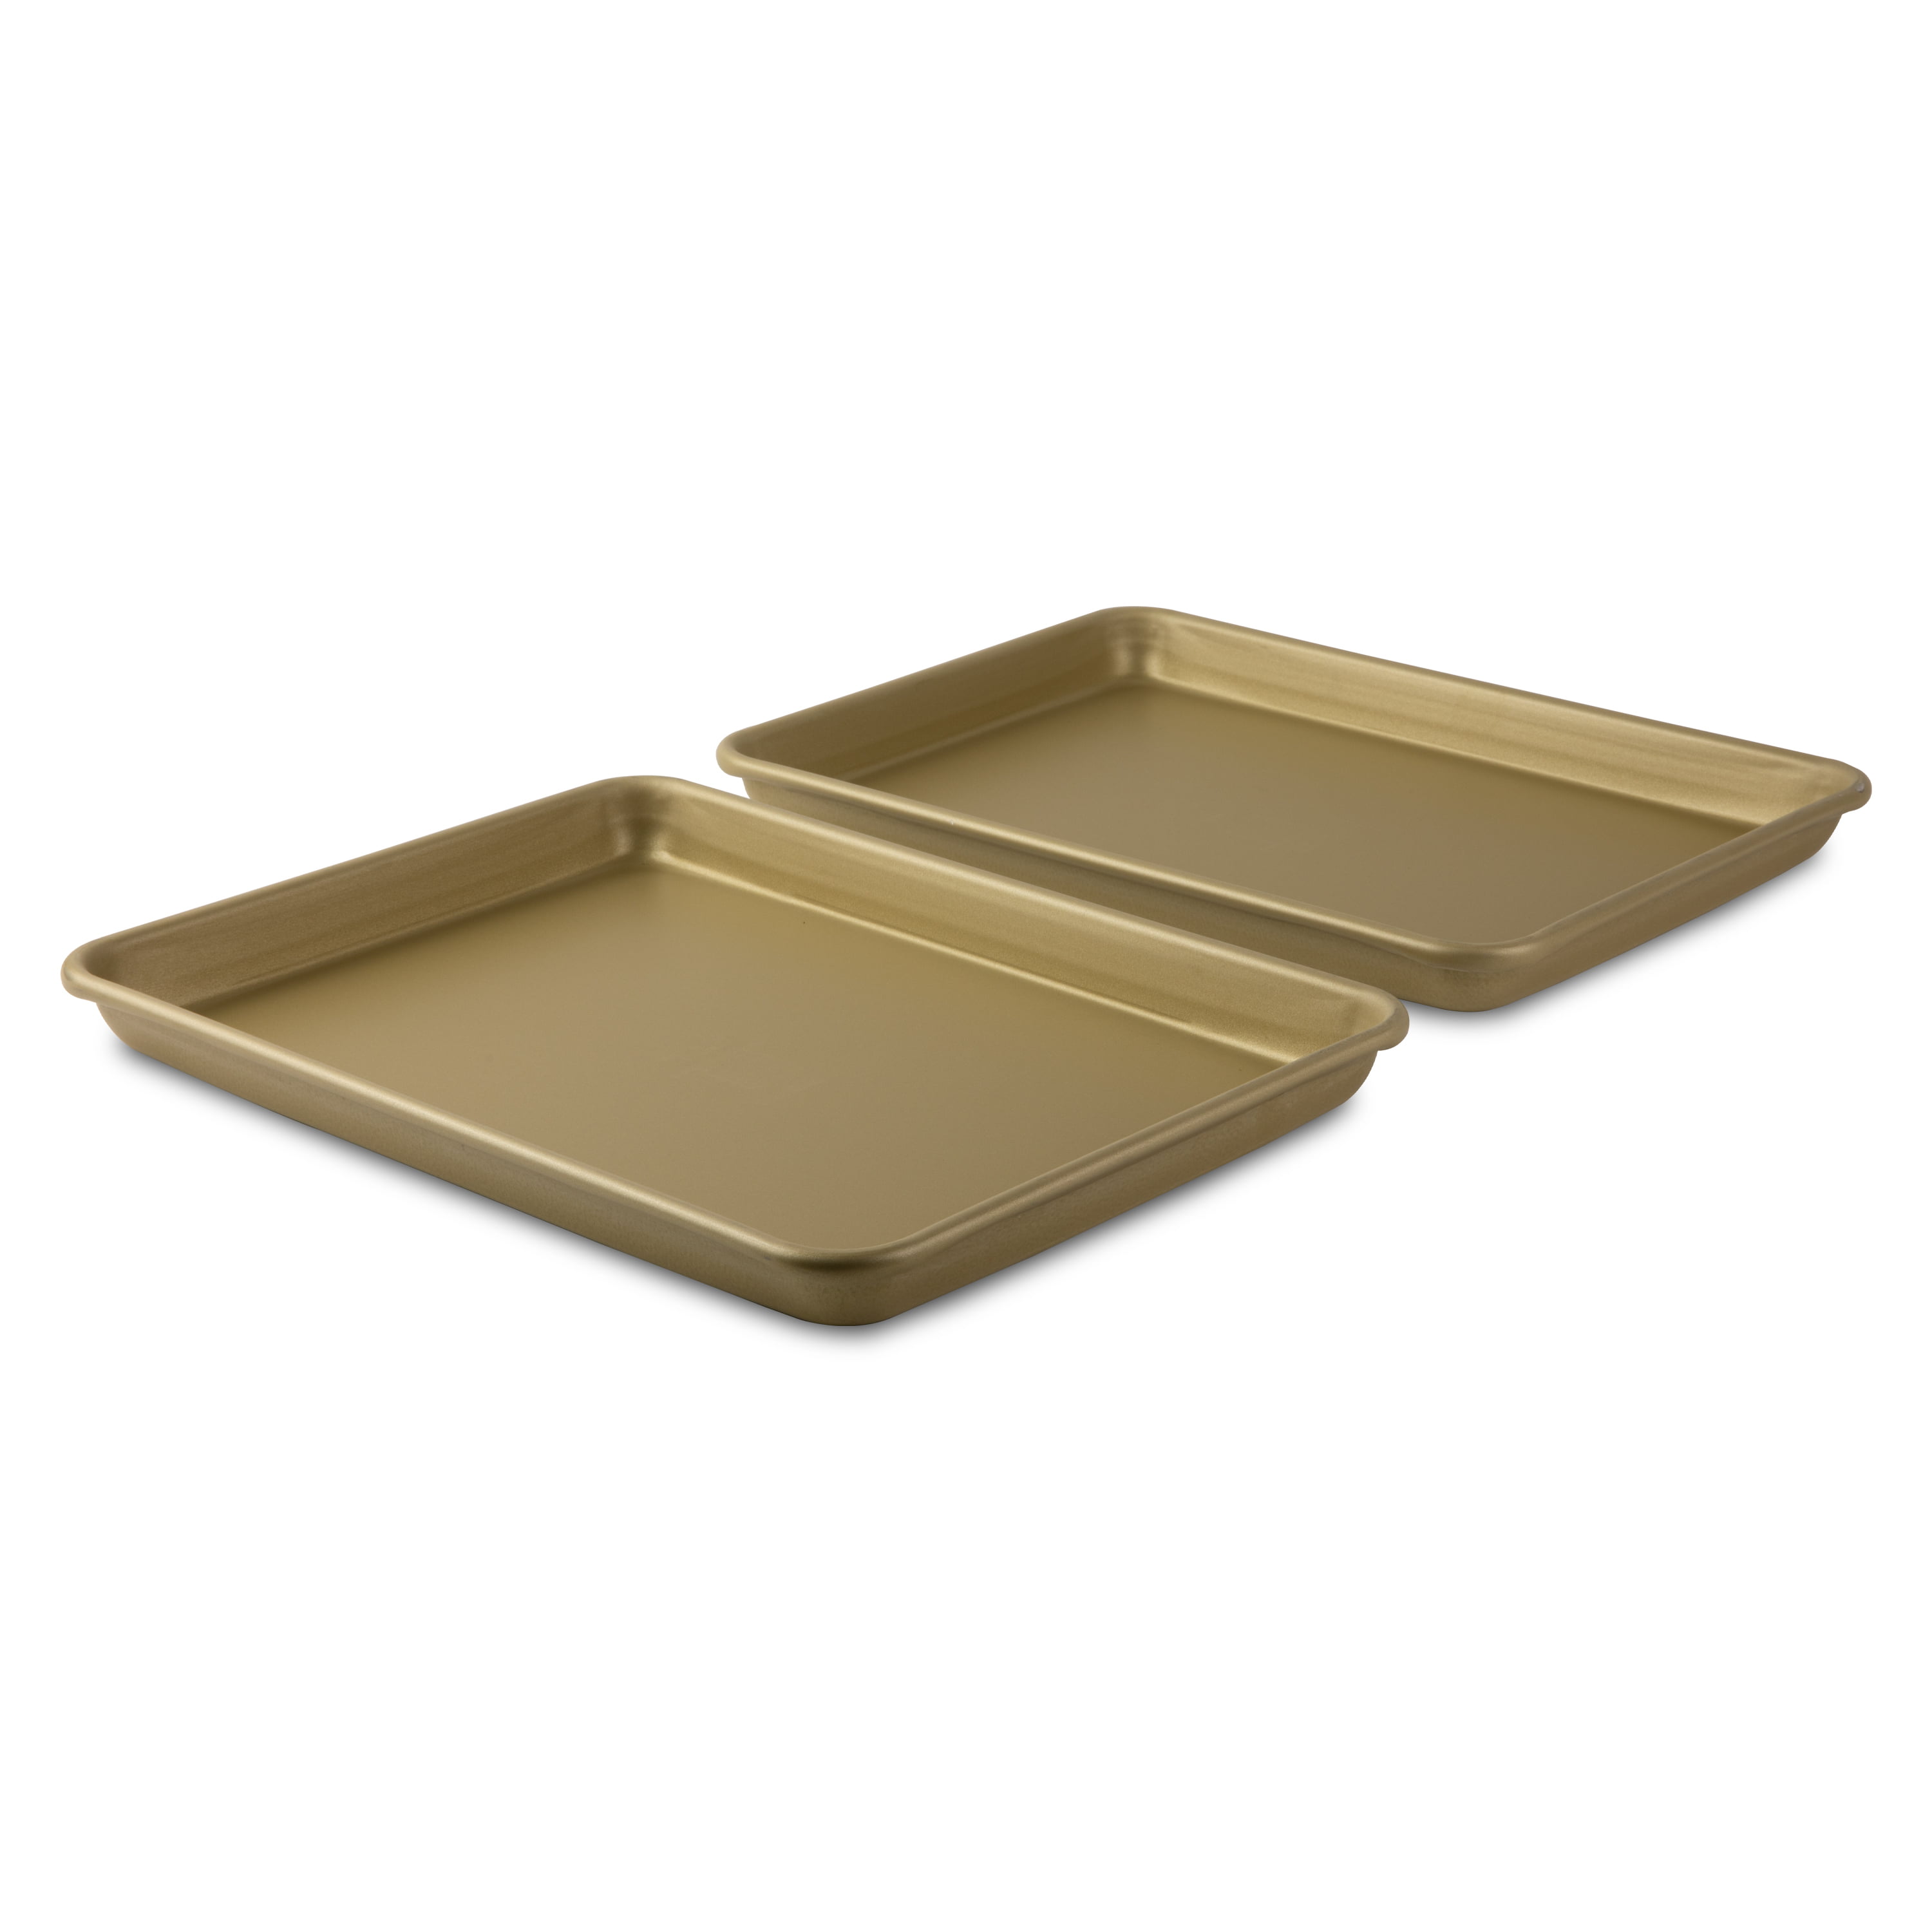 Small Gold-Coated Nonstick Sheet Pan 9.5 x 13 x 1 (2 pack) » NUCU®  Cookware & Bakeware